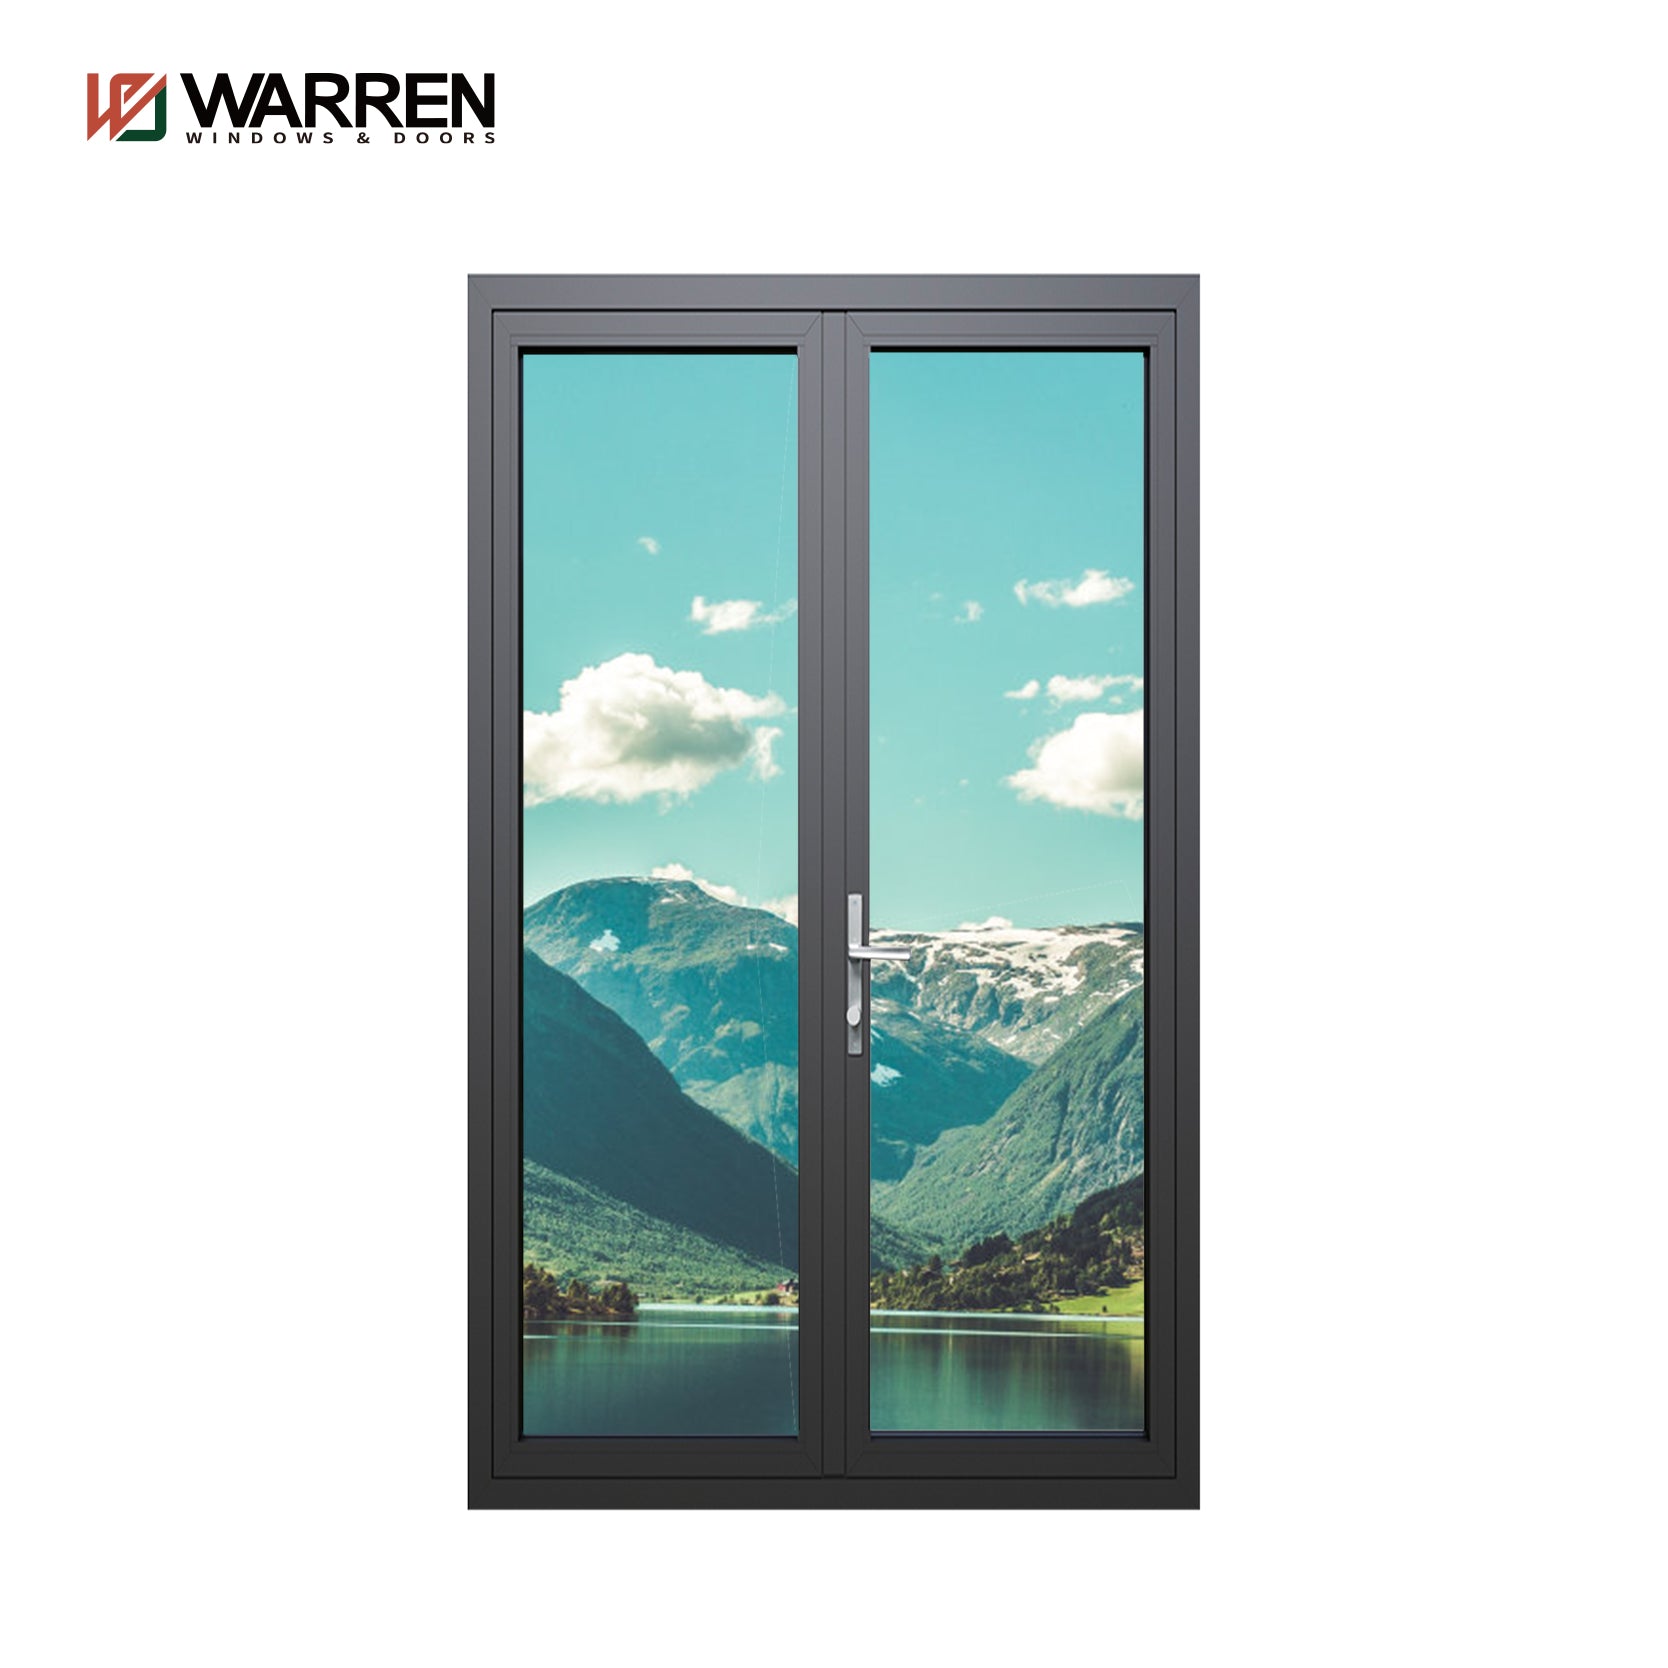 Warren Aluminium Glass Casement Doors Thermal Break French Door Patio French Door  For House